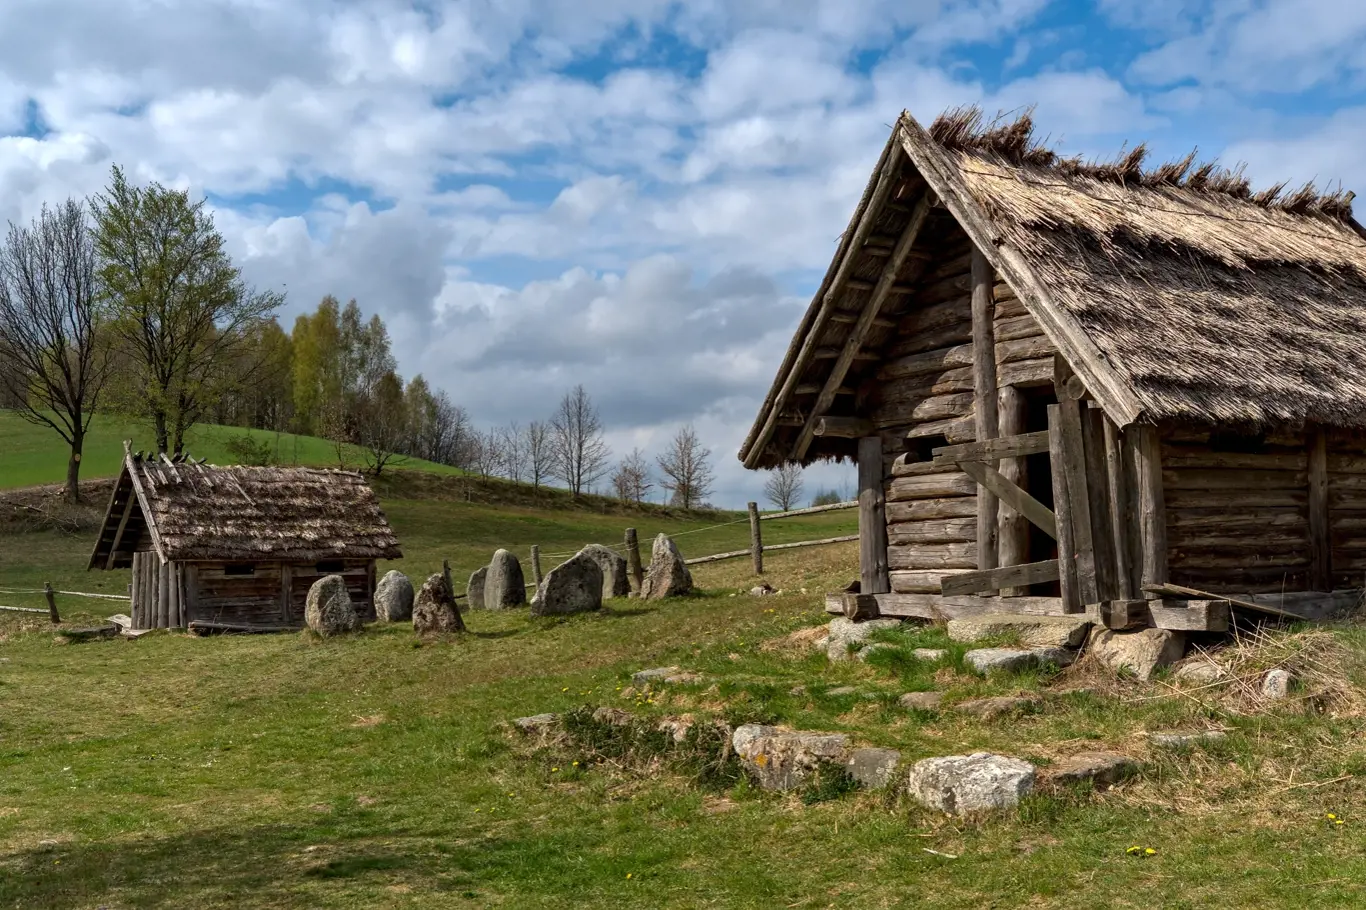 Středověká usedlost v Polsku, ilustrační foto